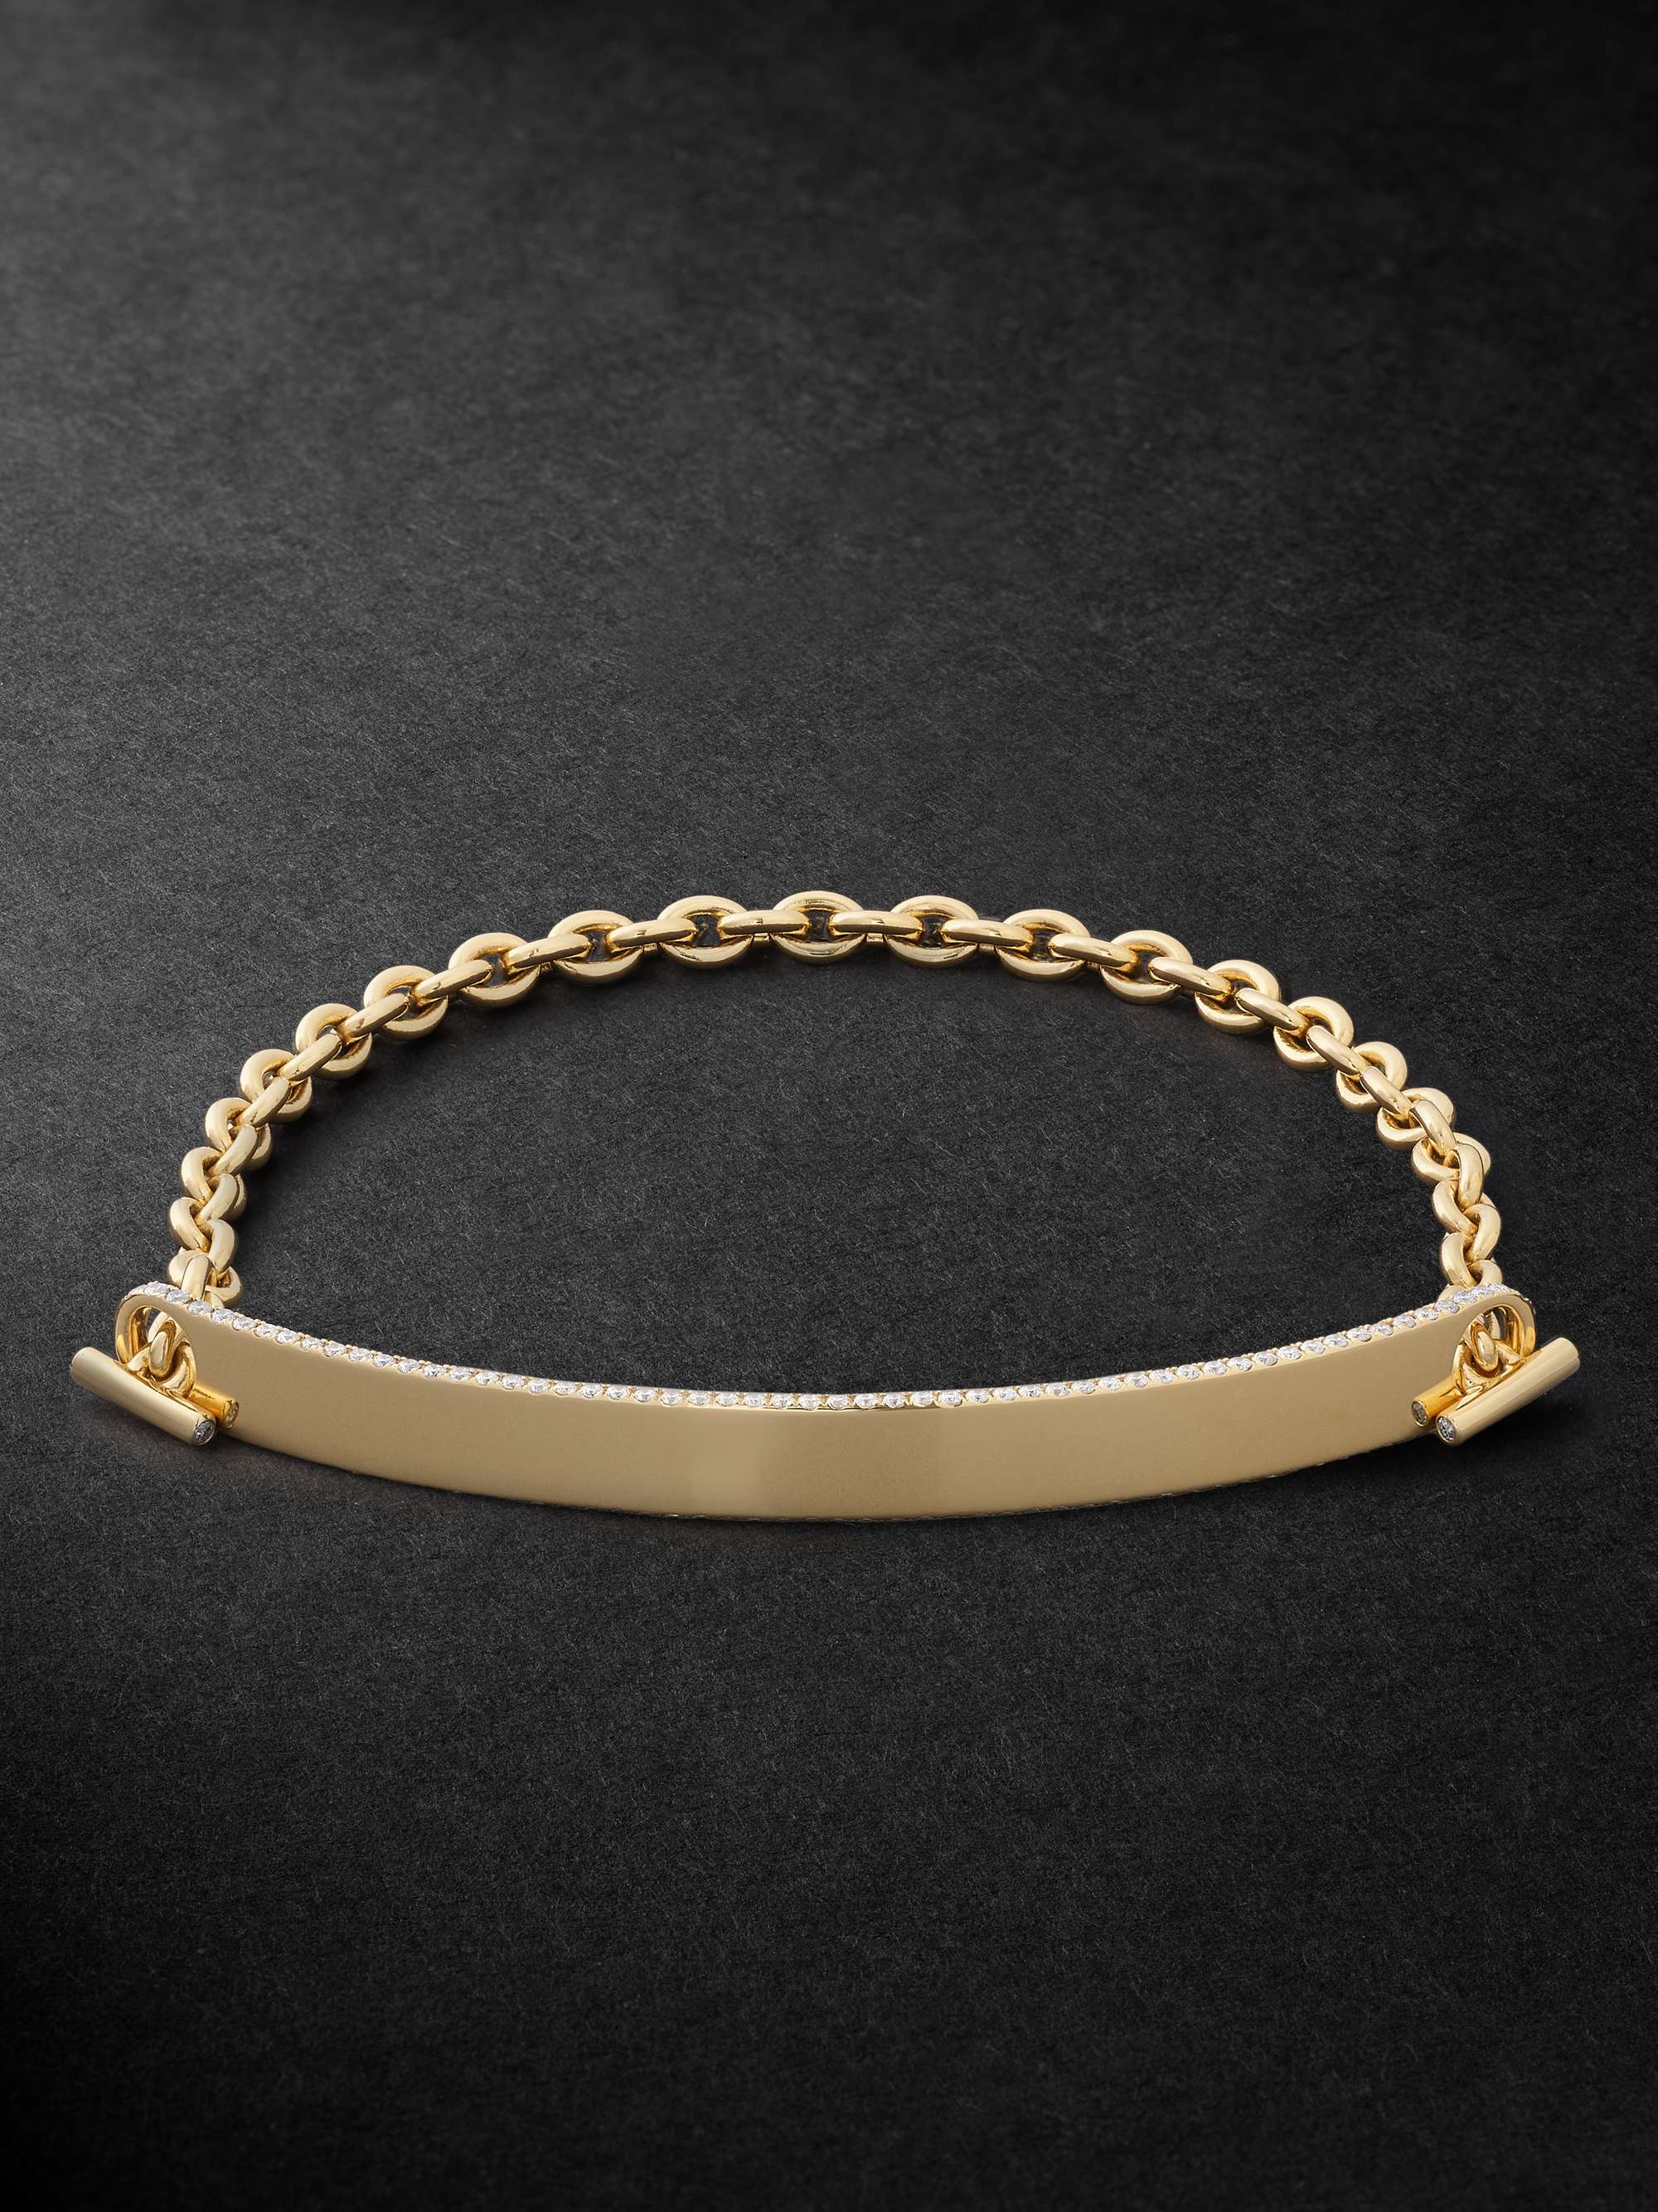 Men's Engraved Bracelet in 18K Gold Vermeil | Forever My